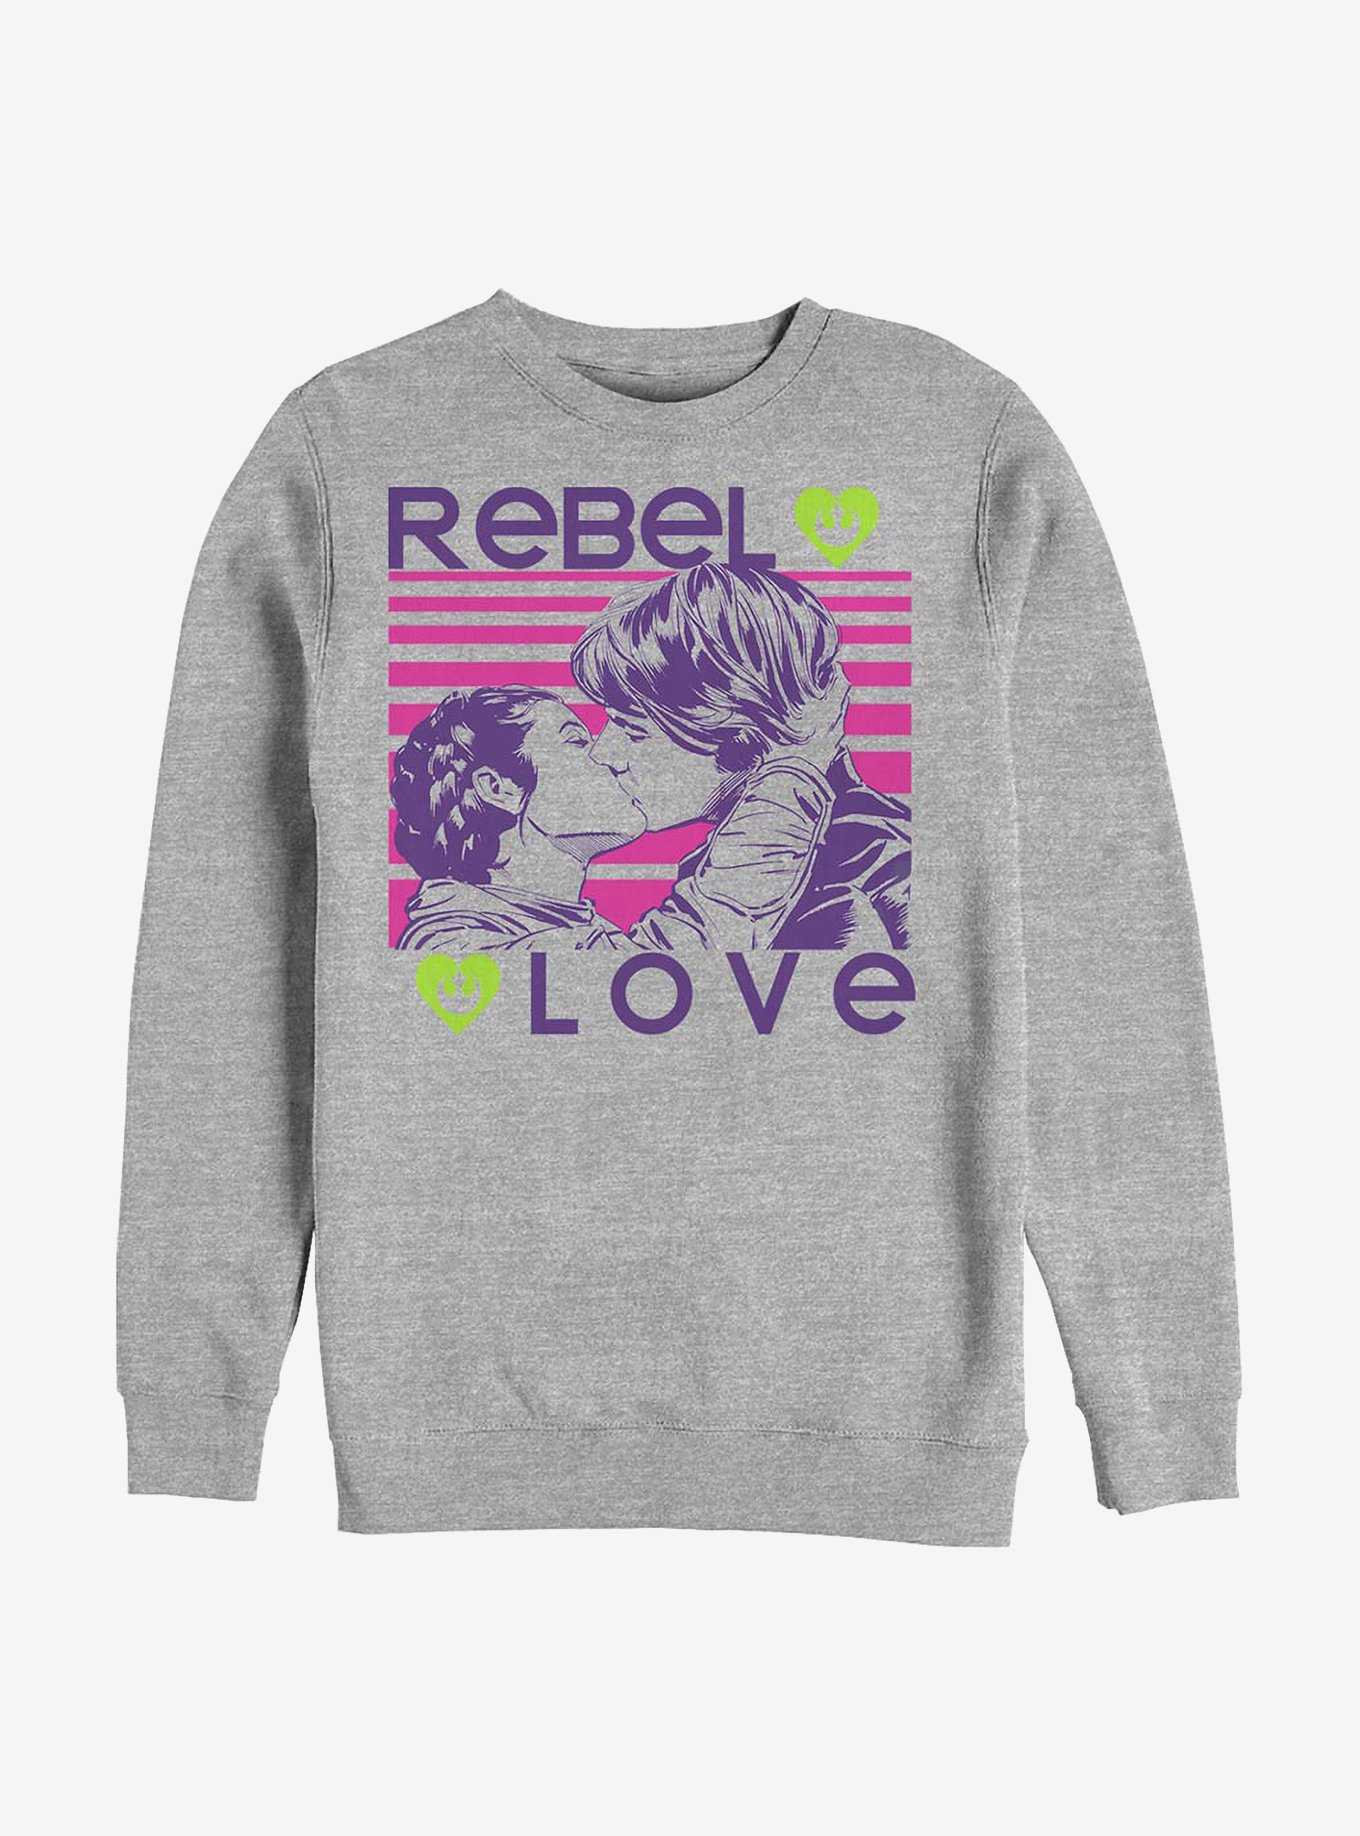 Star Wars Rebel Love Crew Sweatshirt, , hi-res